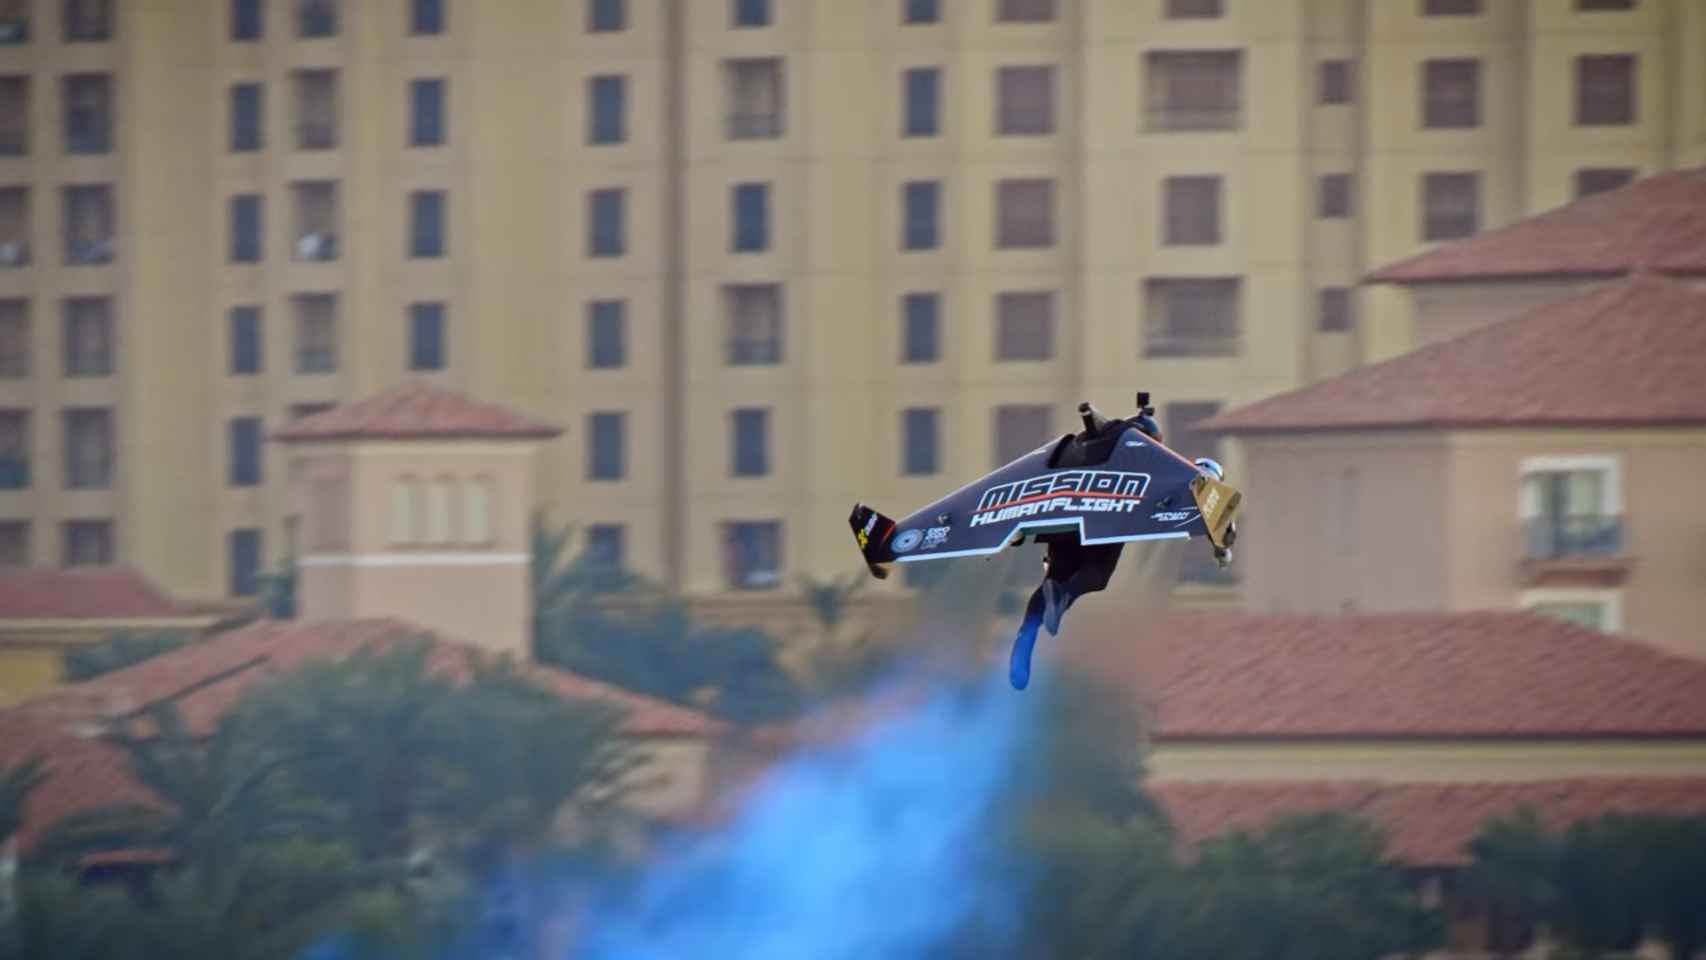 El piloto Vince Reffet (Jetman Dubai) despegando.